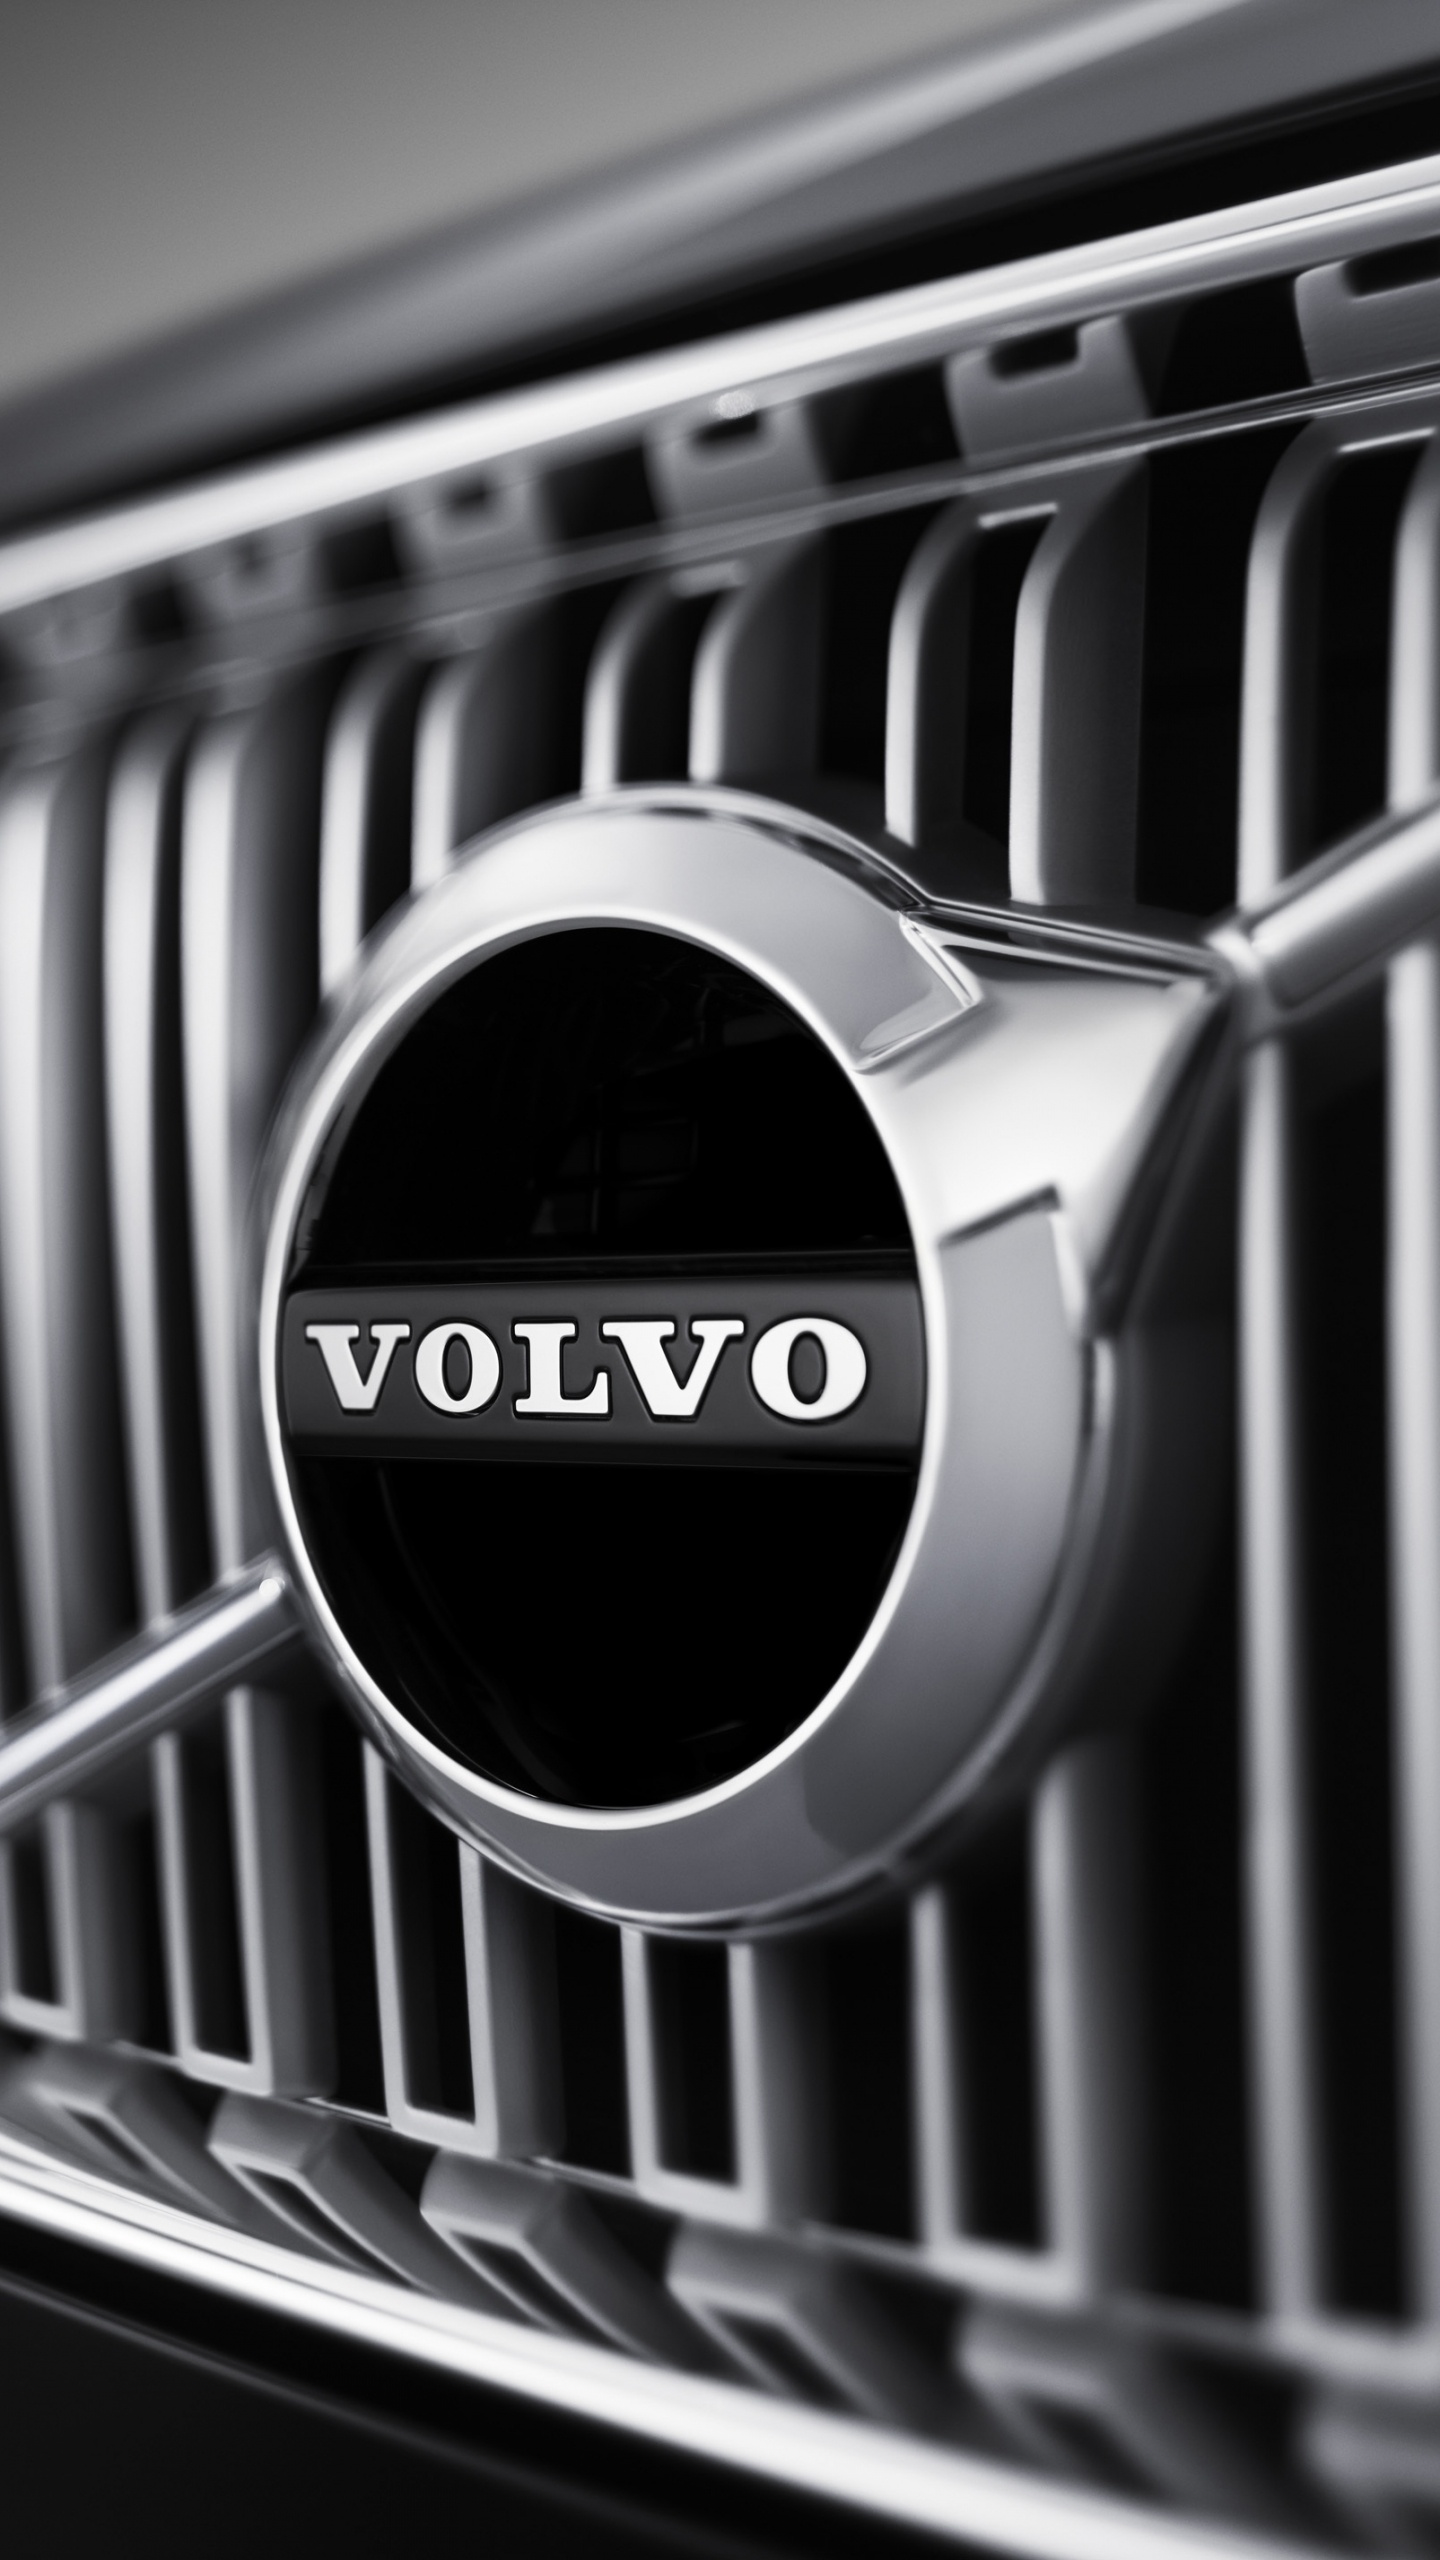 ab Volvo, Coches Volvo, Parrilla, en Blanco y Negro, Volvo. Wallpaper in 1440x2560 Resolution